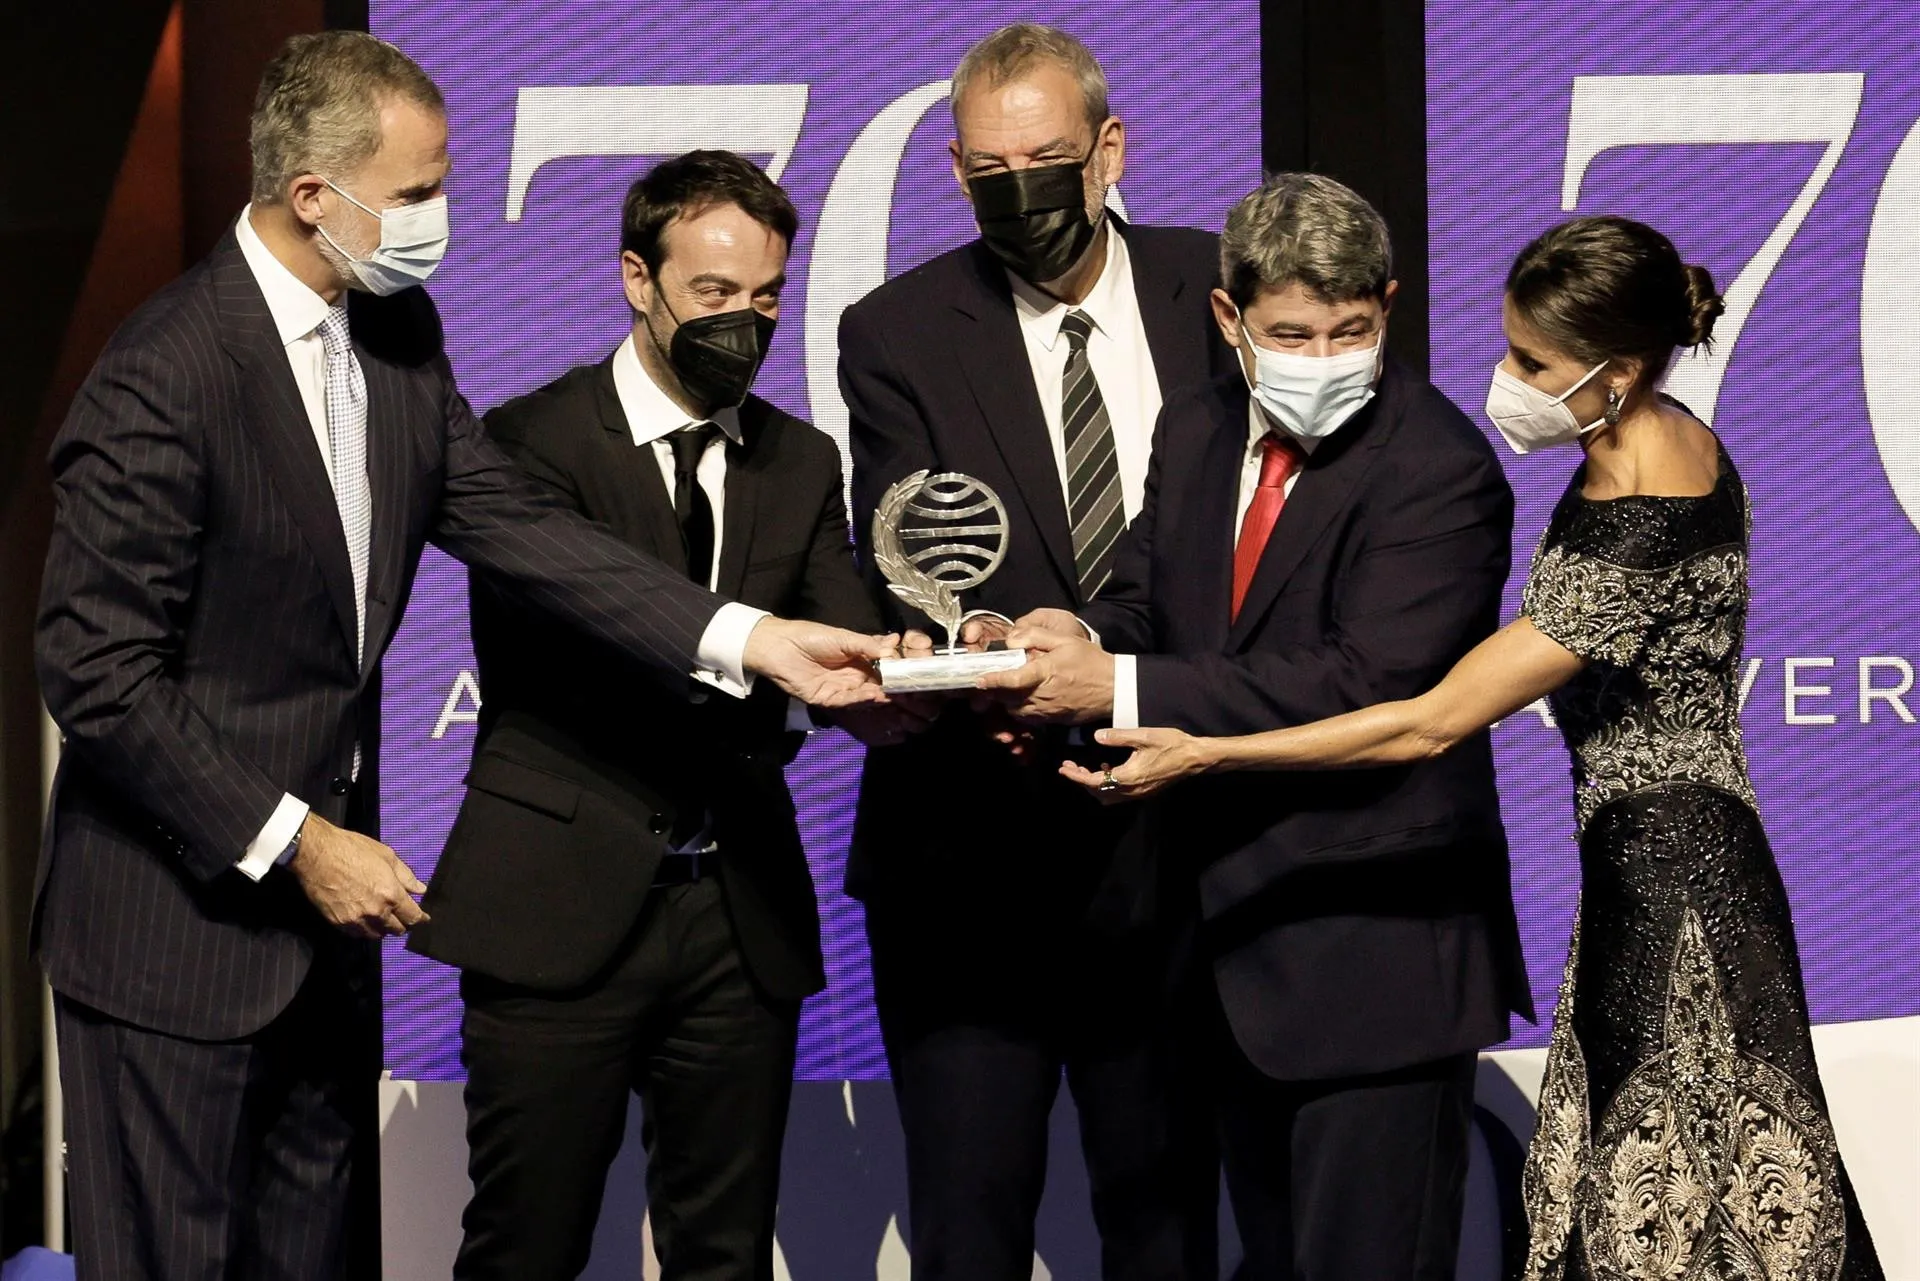 La misteriosa Carmen Mola gana el Premio Planeta del millón de euros